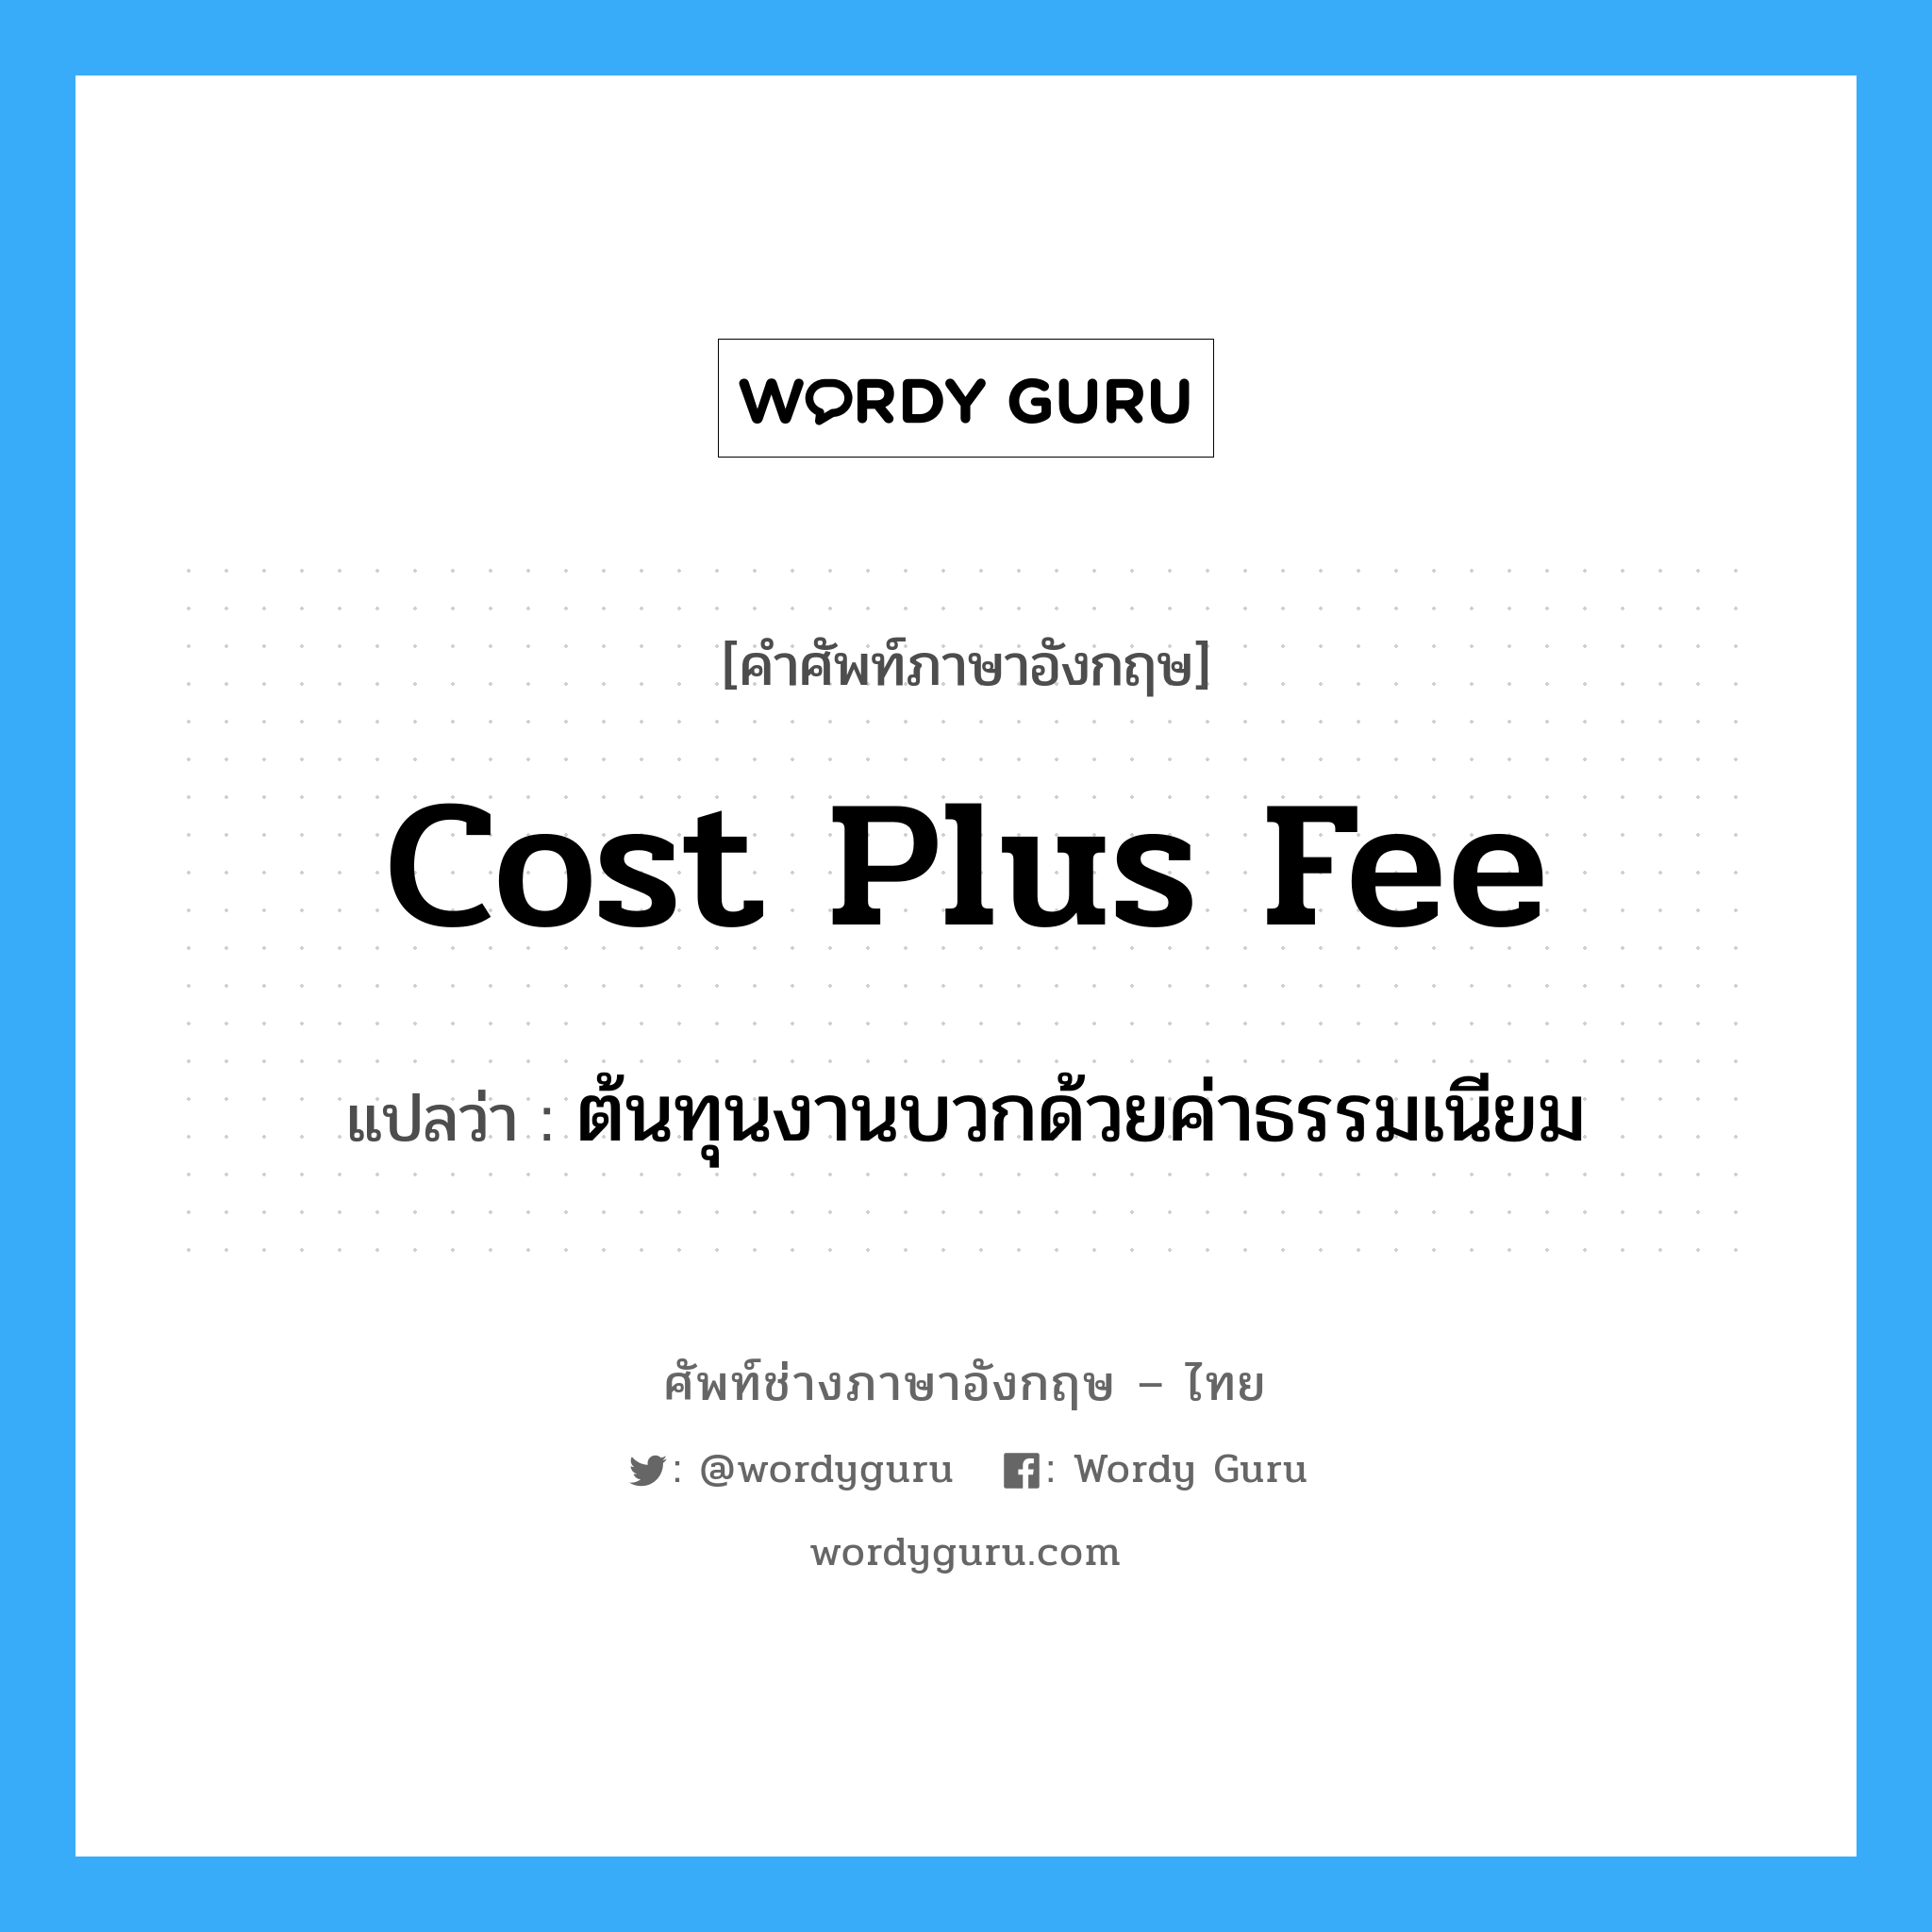 Cost Plus Fee แปลว่า?, คำศัพท์ช่างภาษาอังกฤษ - ไทย Cost Plus Fee คำศัพท์ภาษาอังกฤษ Cost Plus Fee แปลว่า ต้นทุนงานบวกด้วยค่าธรรมเนียม